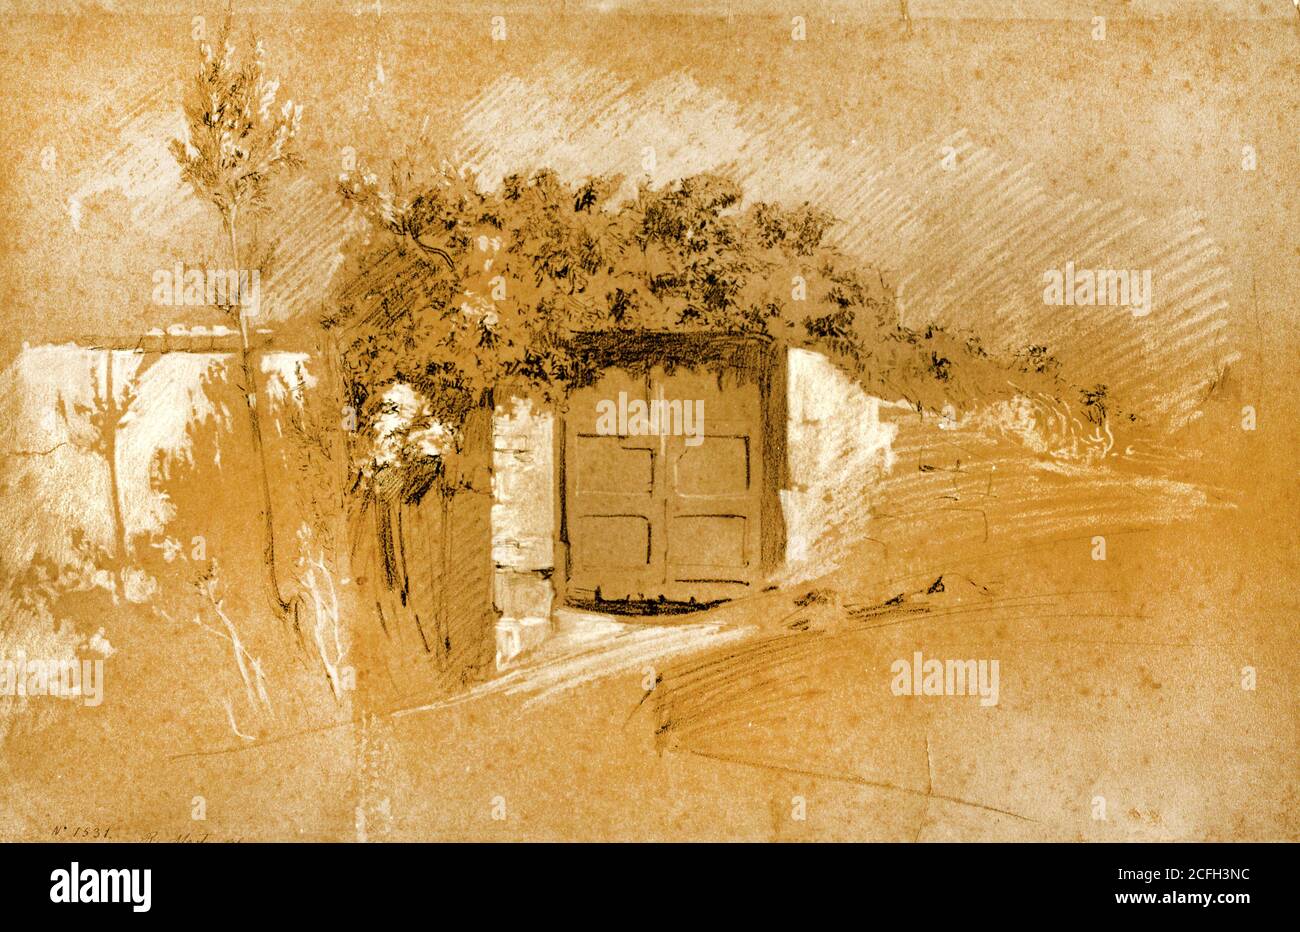 Ramon Marti i Alsina, porta e muro, circa 1860-1870, disegno, bastone conte e piombo bianco su carta colorata, Museu Nacional d'Art de Catalunya, Barcelo Foto Stock